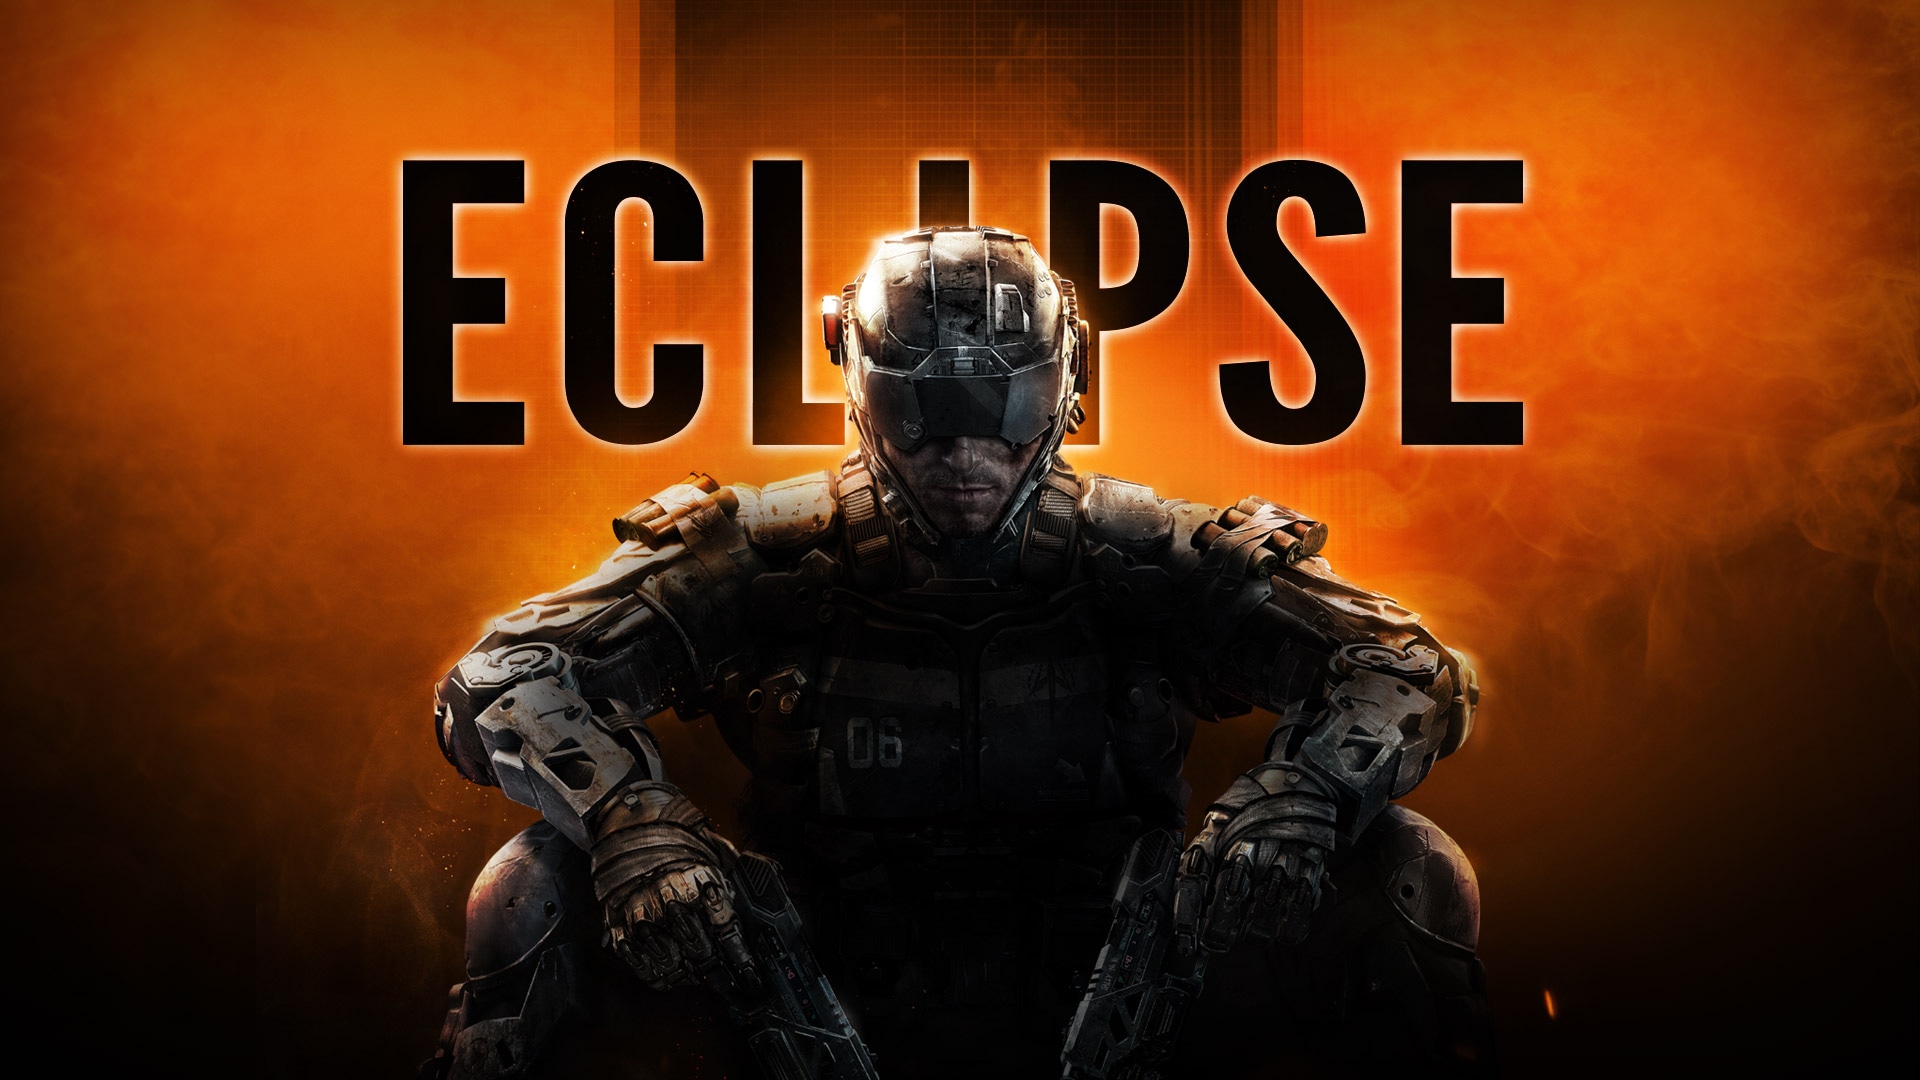 Immagine pubblicata in relazione al seguente contenuto: Si avvicina il lancio del DLC Eclipse di Call of Duty: Black Ops III | Nome immagine: news24054_Call-of-Duty-Black-Ops-III_1.jpg